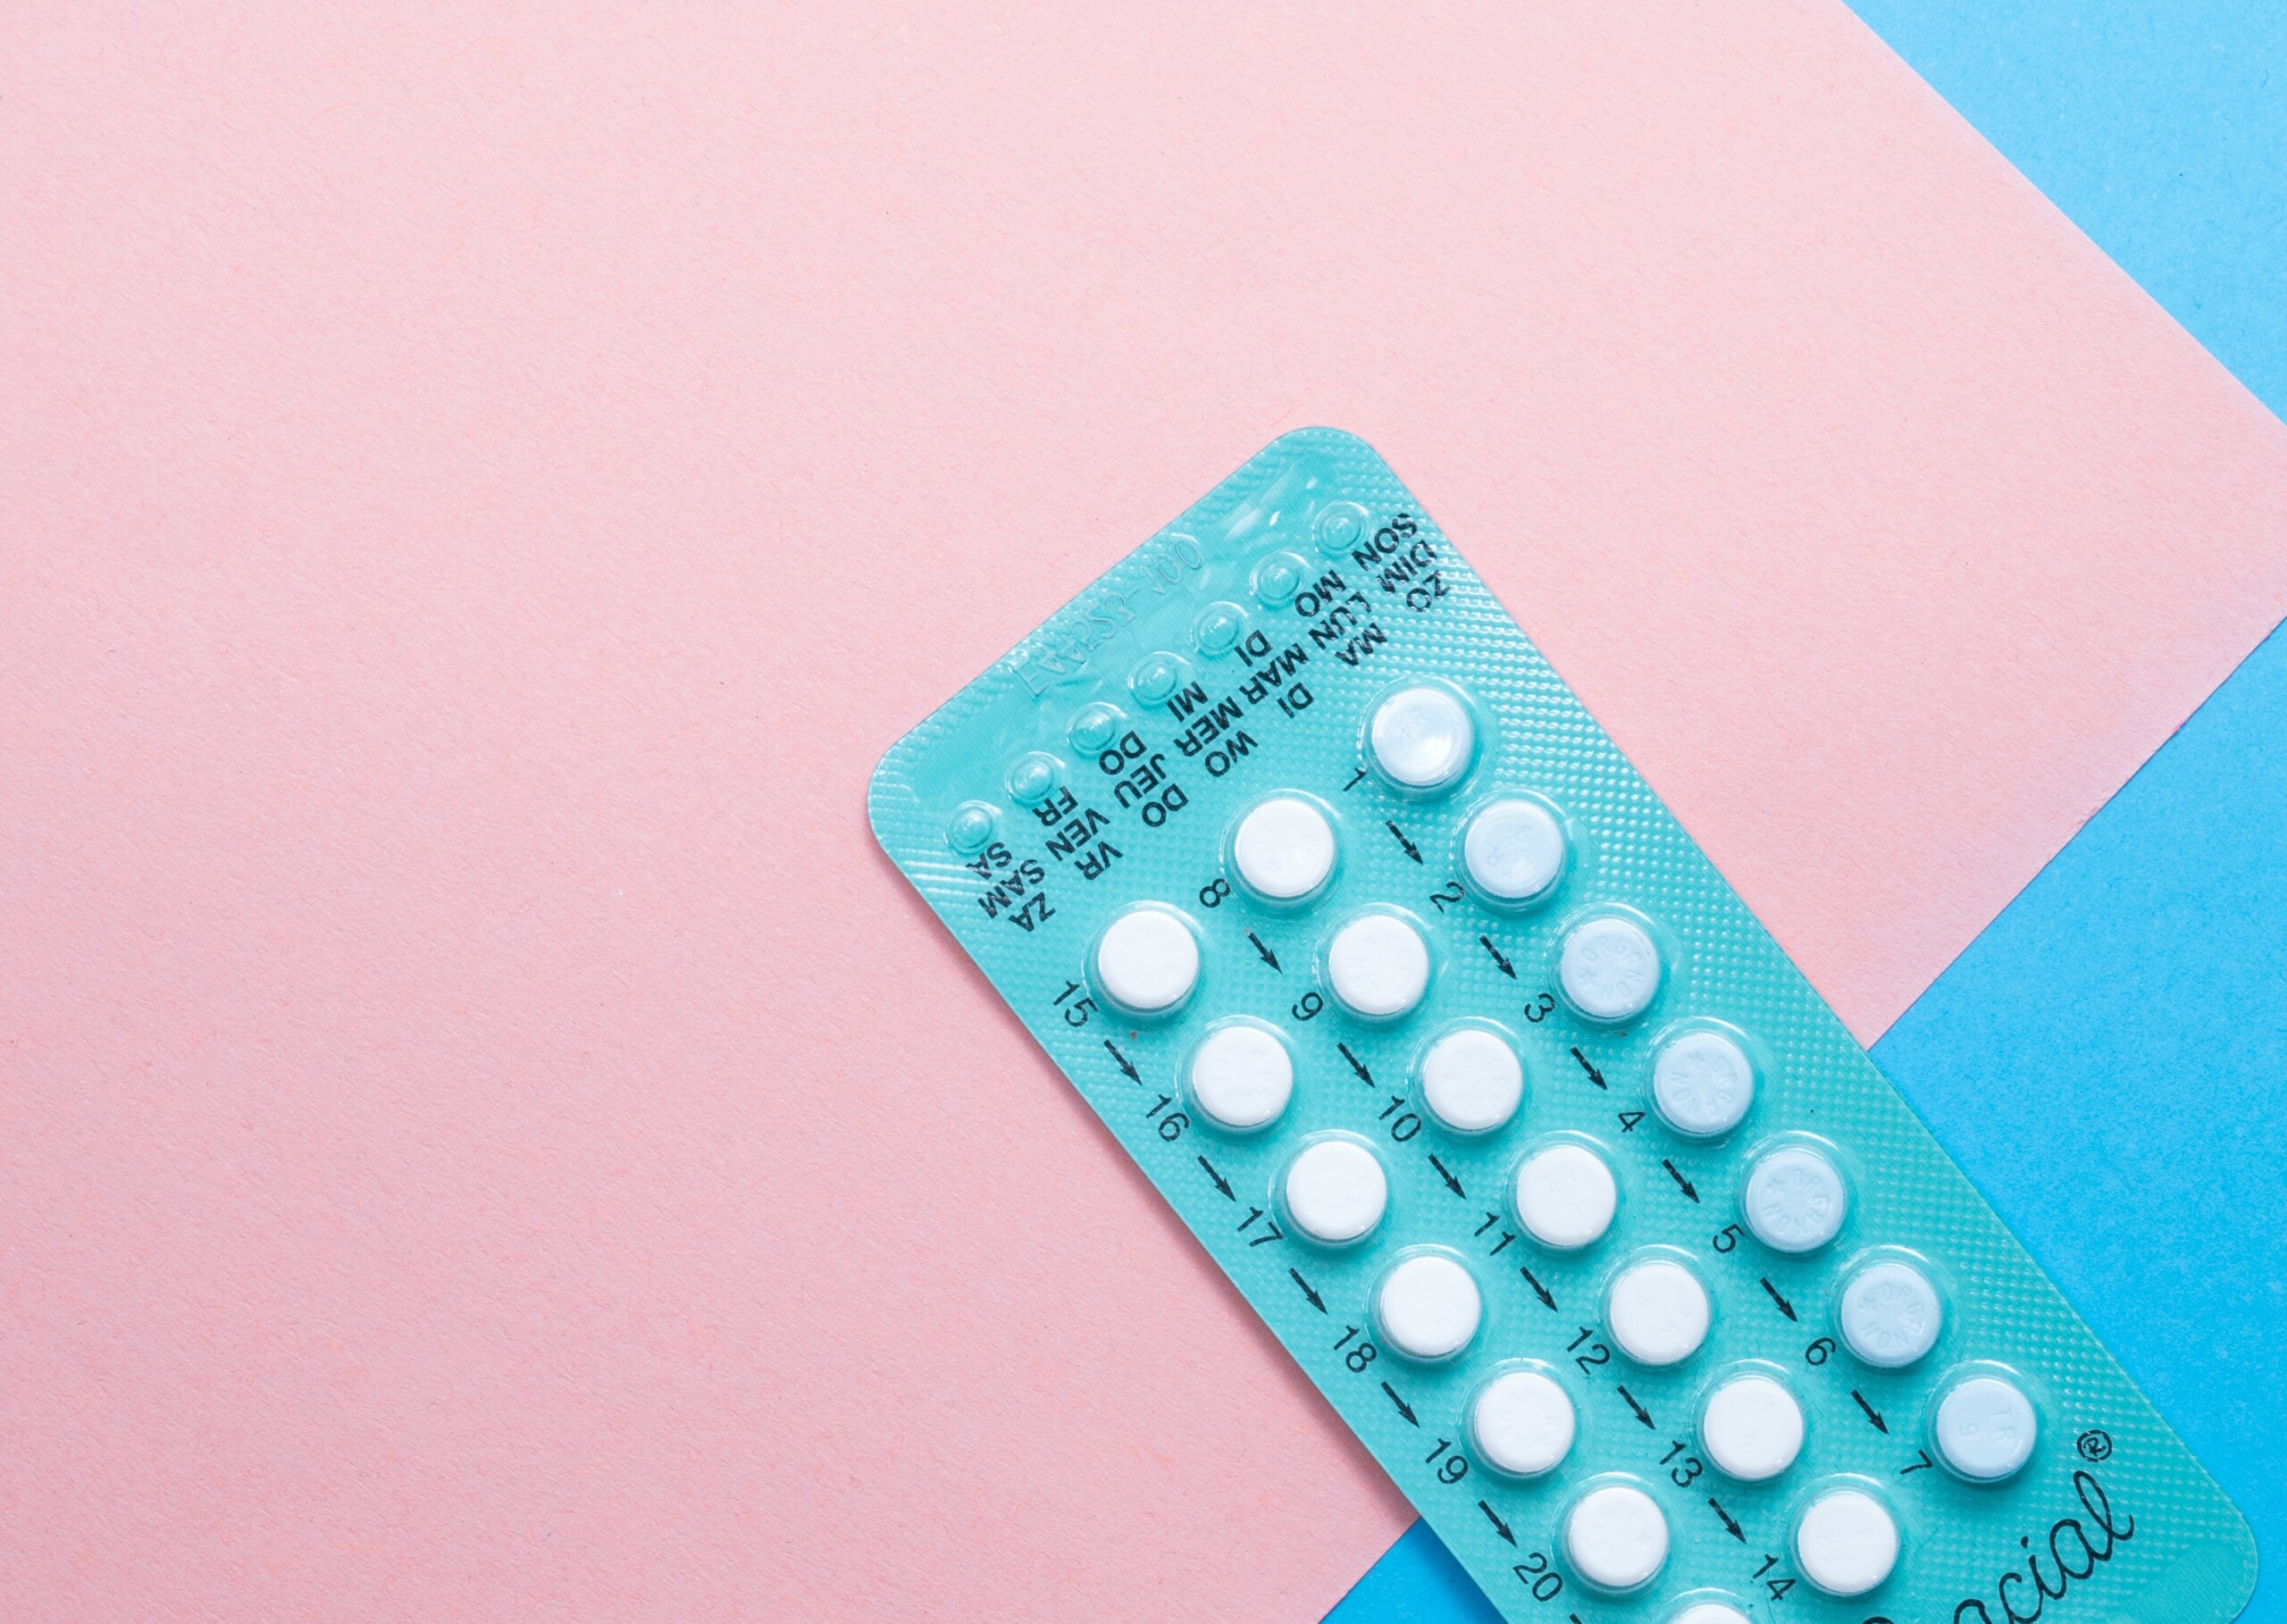 Pilule anticonceptionale pentru varice - De ce în timpul varicelor nu puteți bea contraceptive